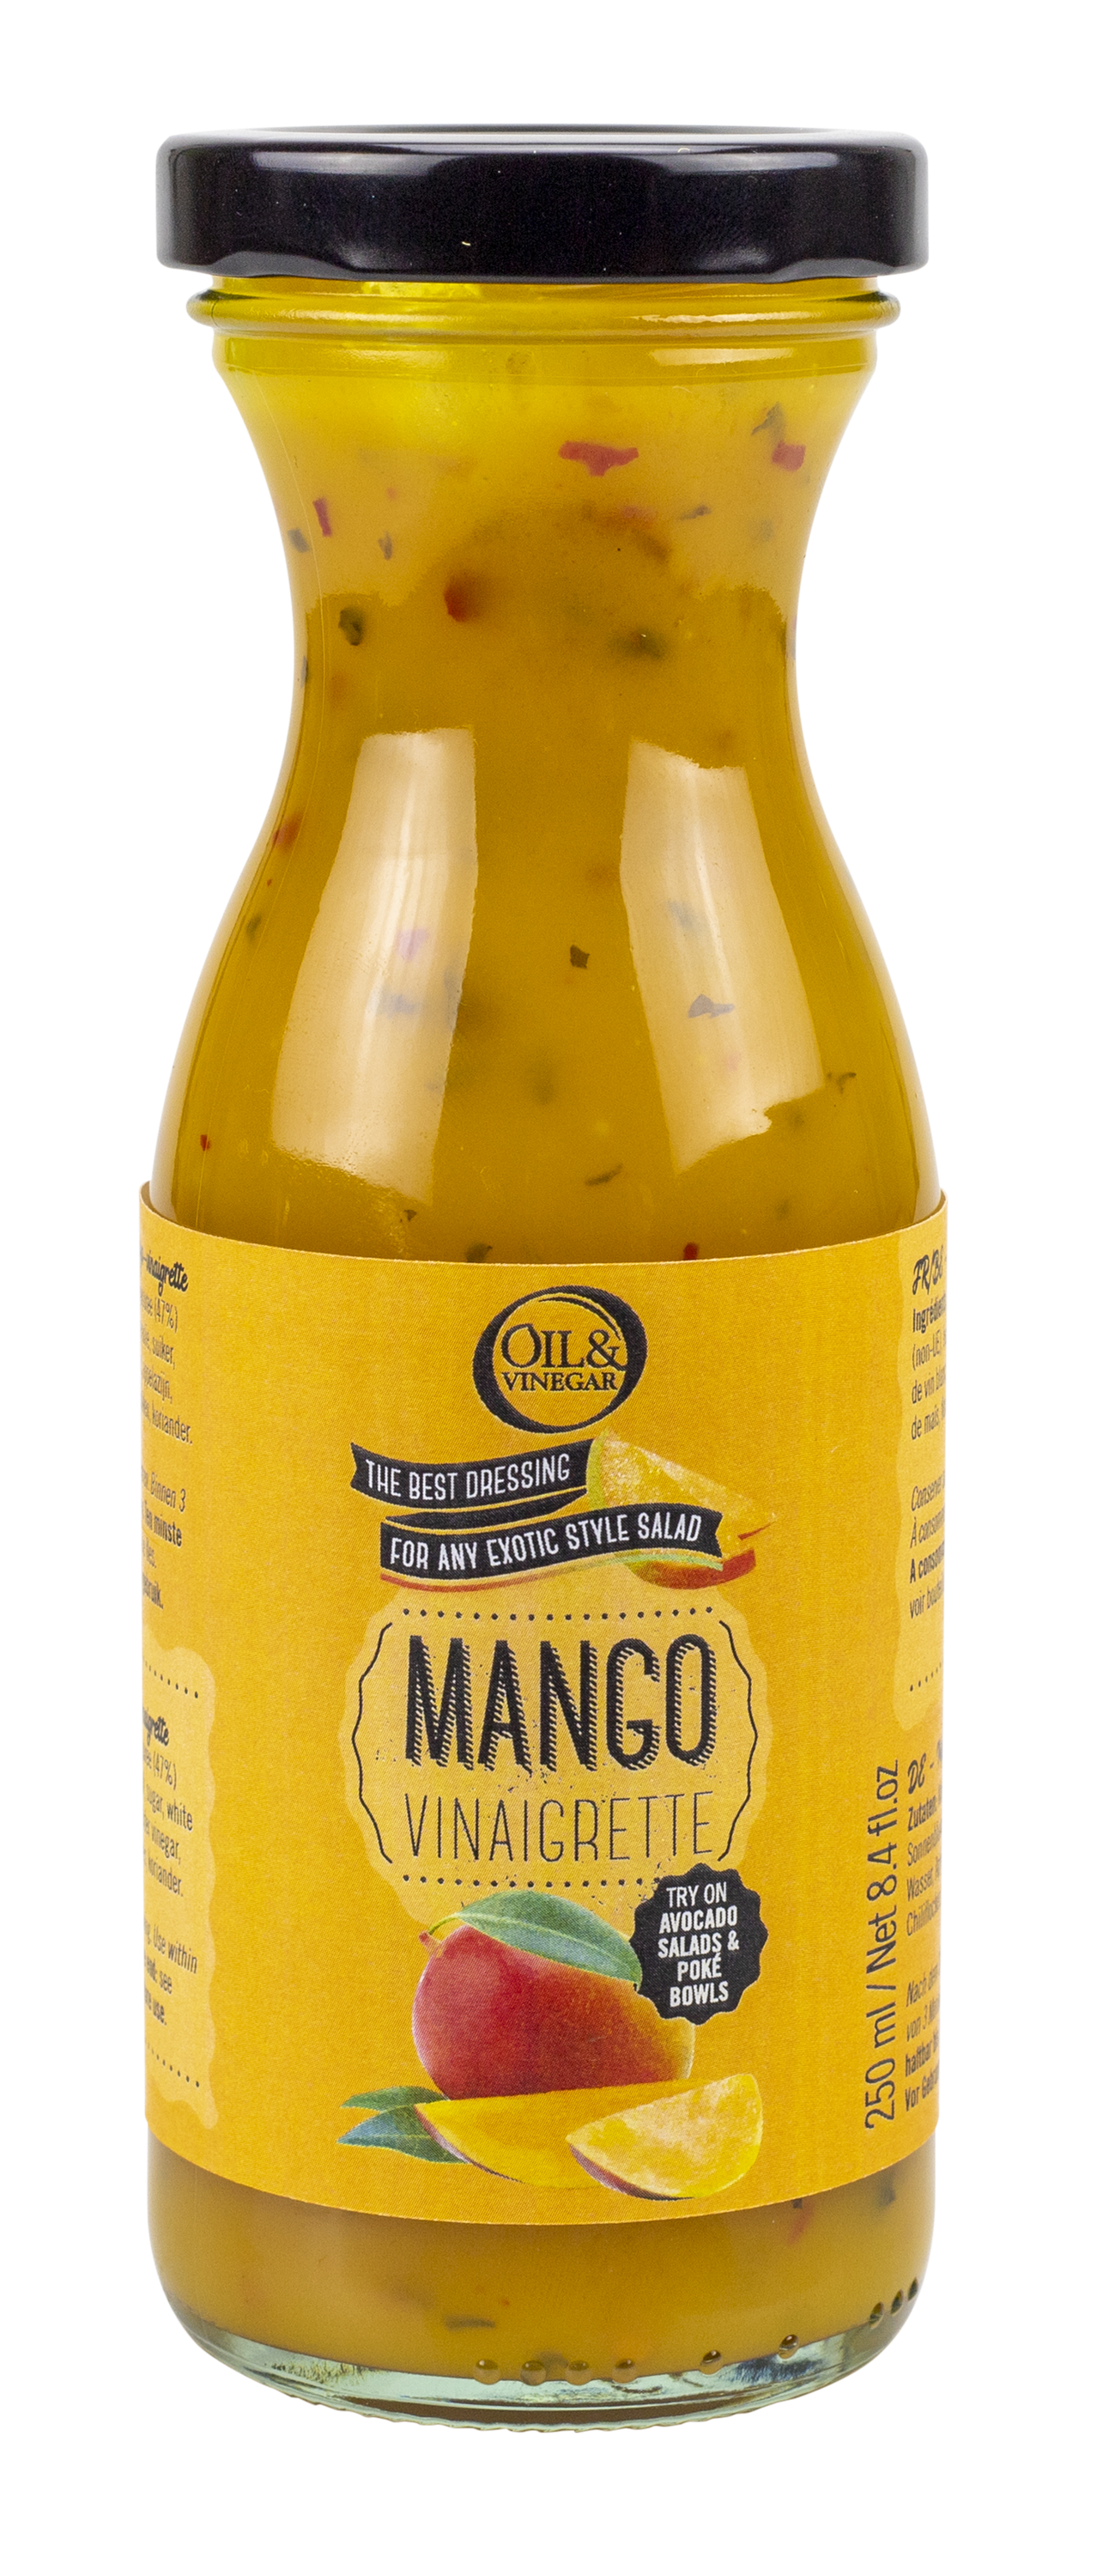 Oil & Vinegar_Mango vinaigrette_250ml_ 6,95EUR